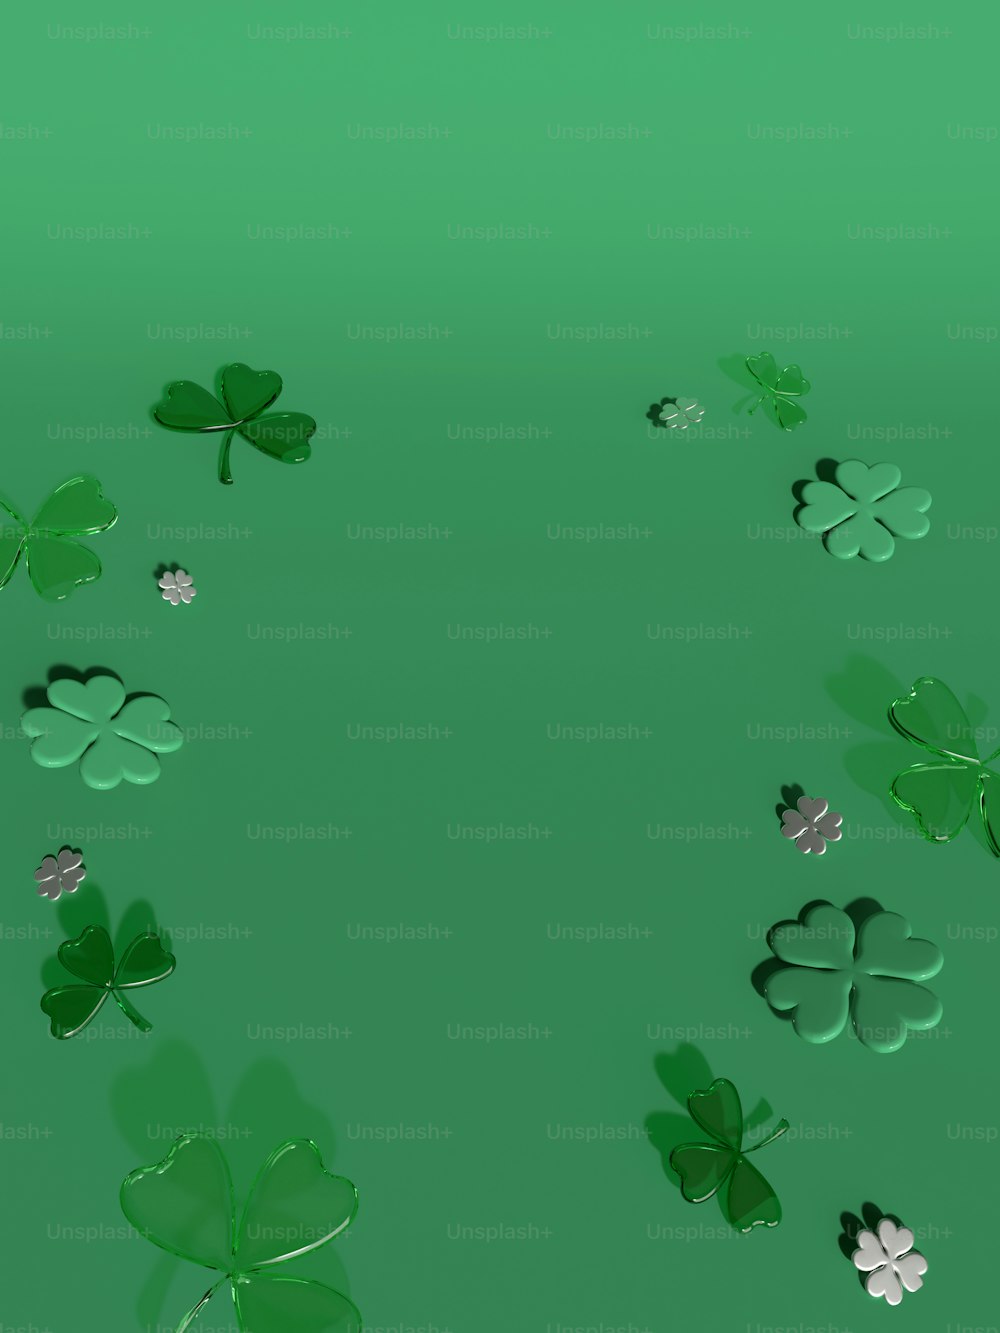 Un grupo de tréboles verdes sobre un fondo verde